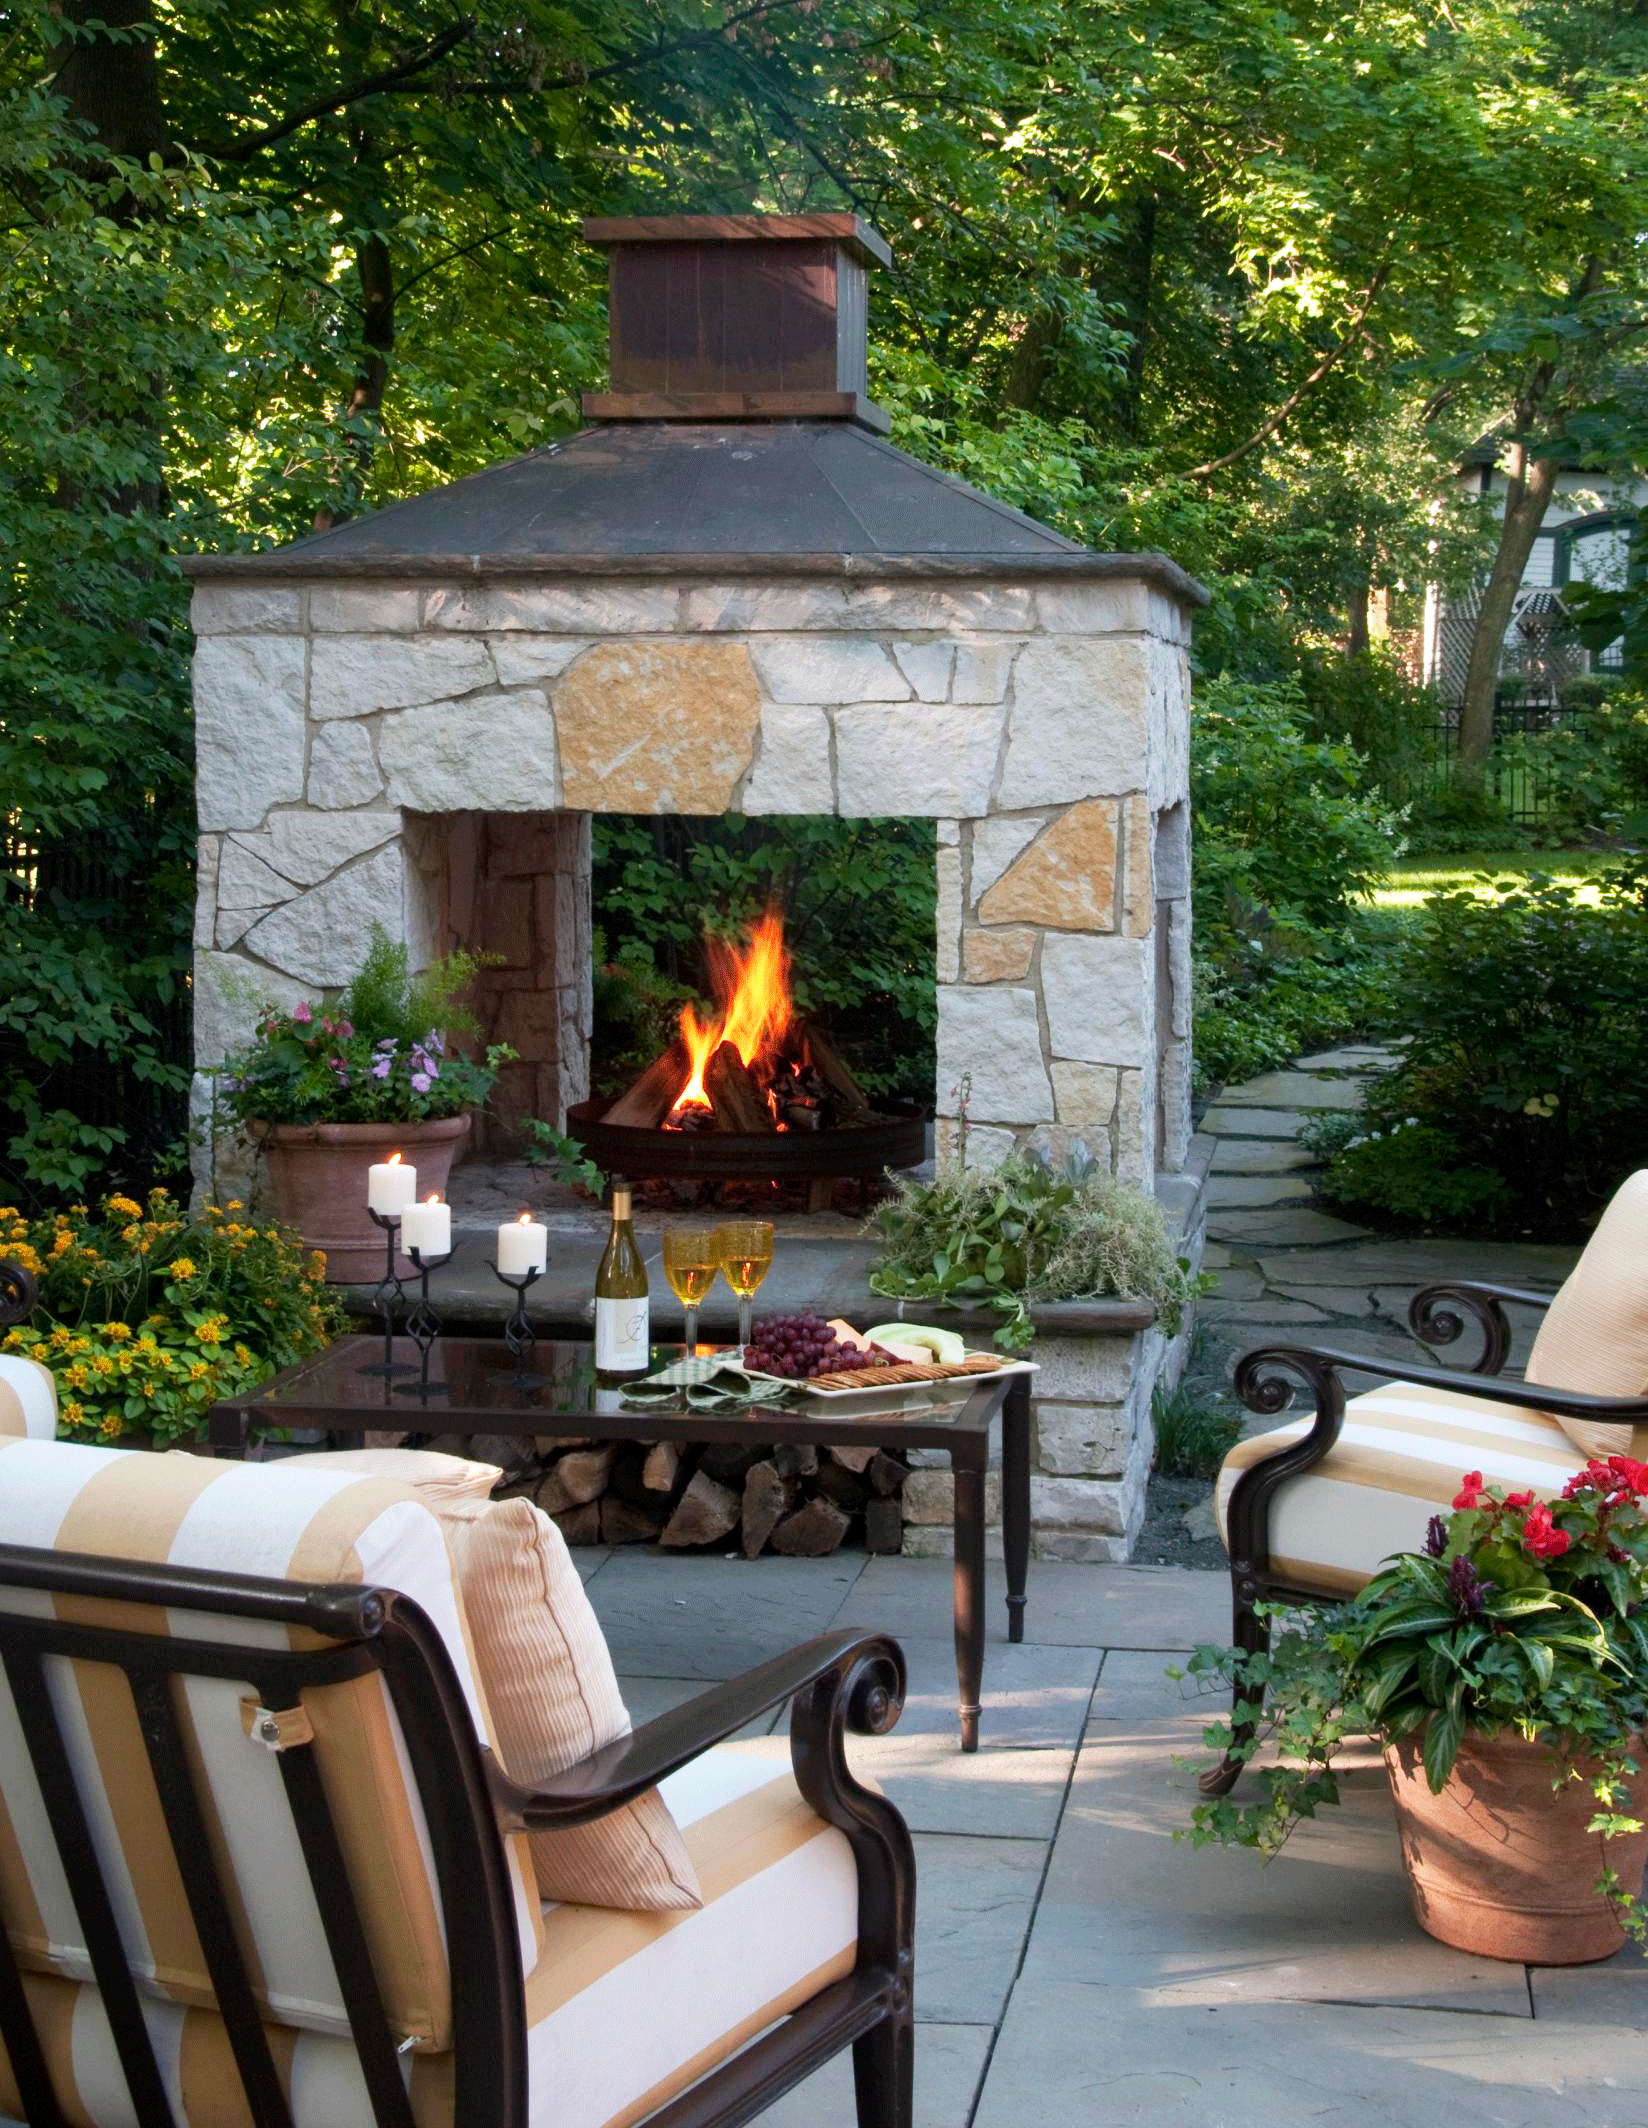 20 Outdoor Fireplace Ideas - 20 Outdoor Fireplace Ideas -   16 diy Outdoor fireplace ideas